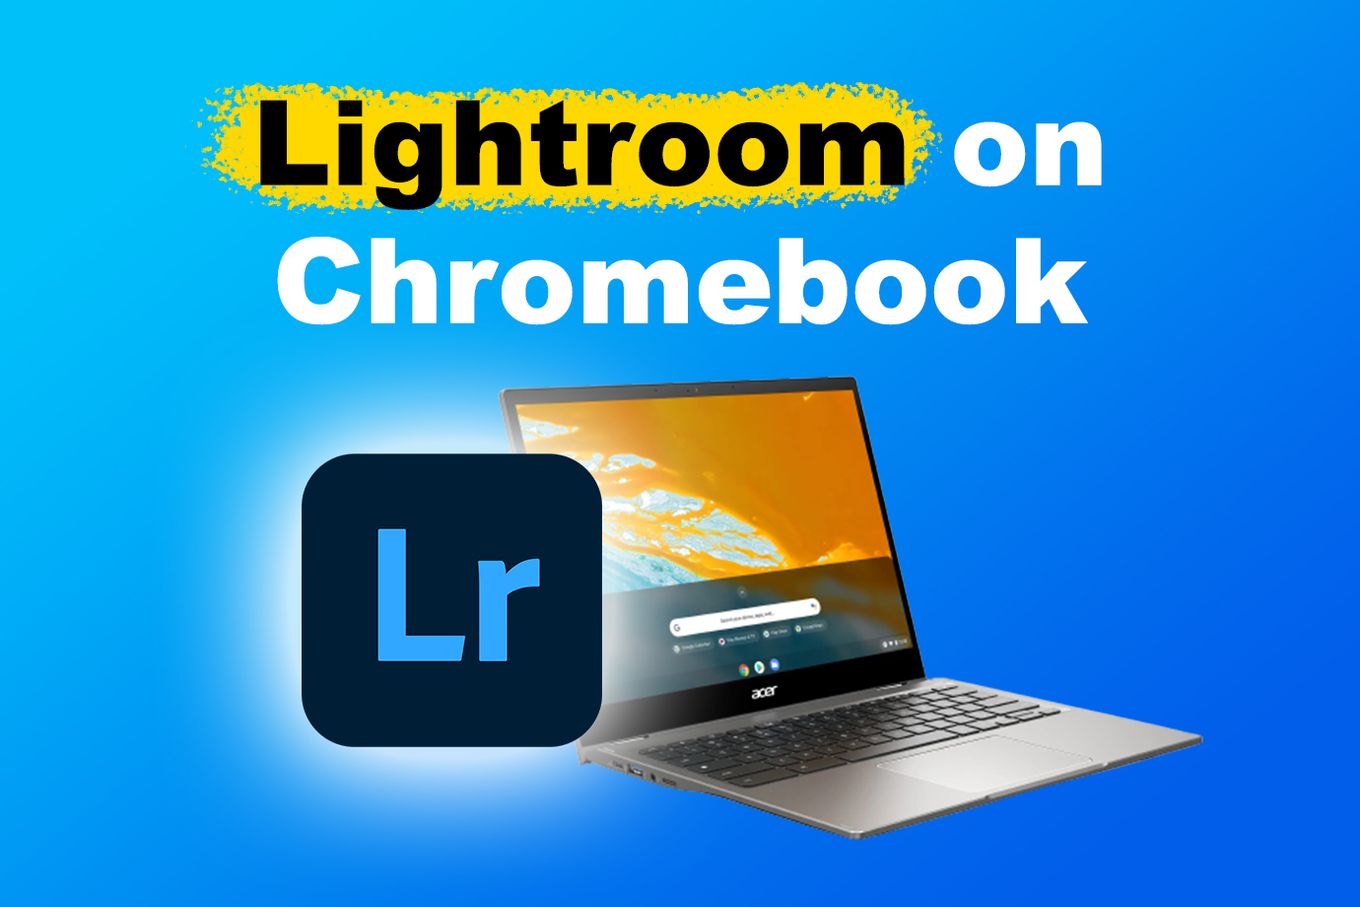 Lightroom on Chromebook